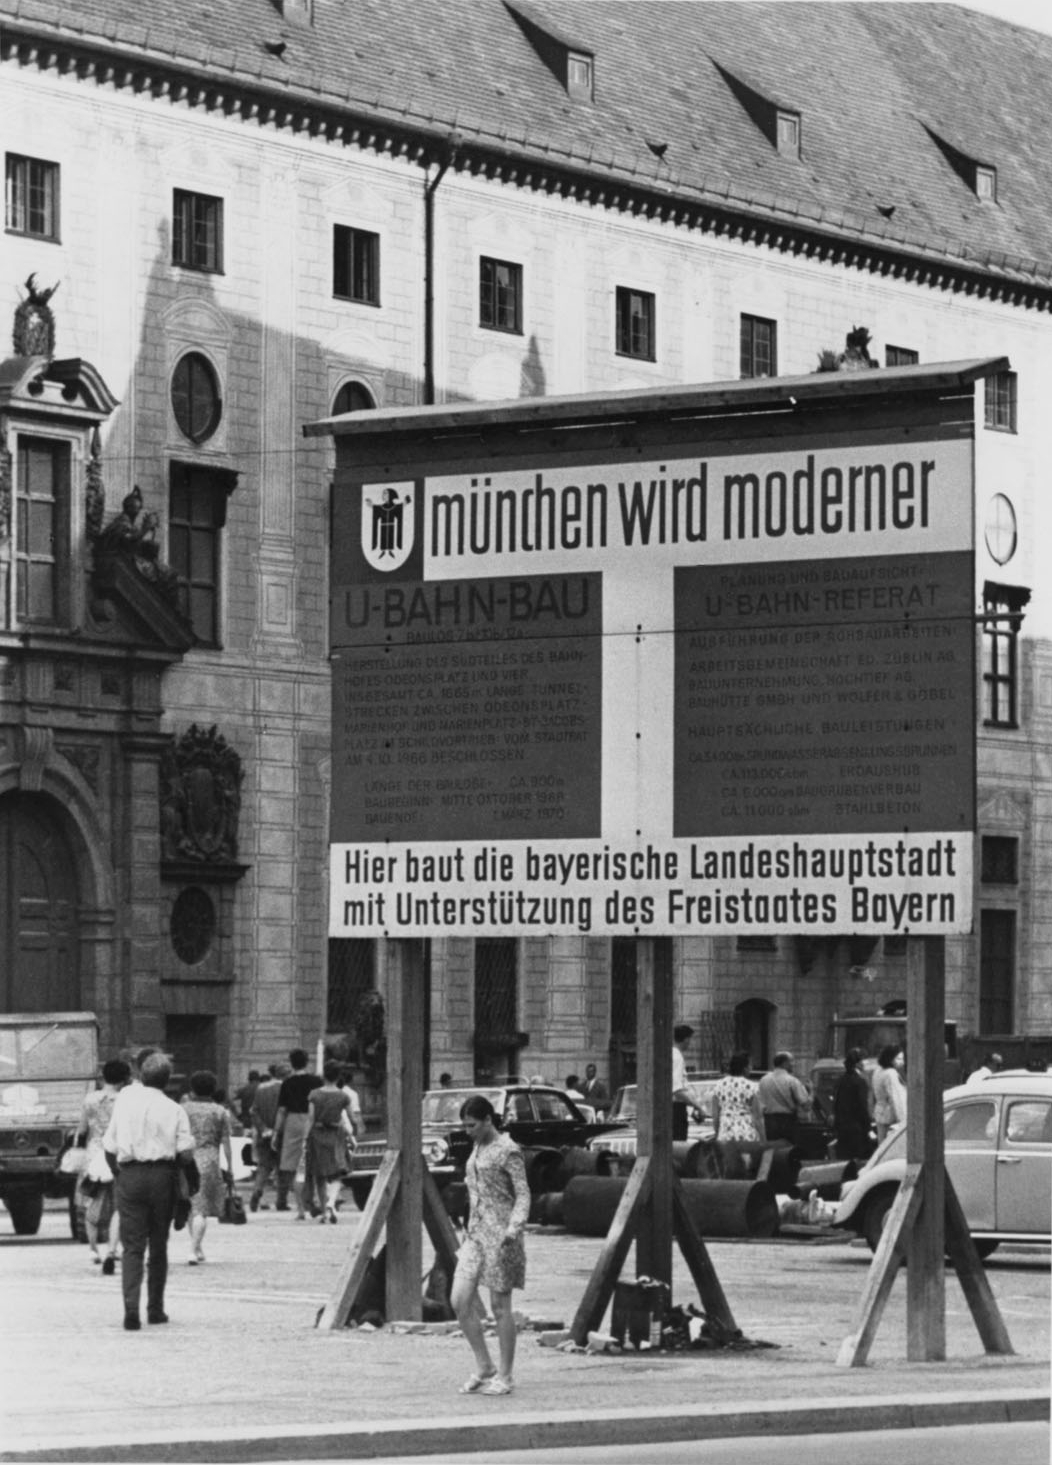 Schwarz-Weiß-Fotografie eines großen Schildes mit der Aufschrift “münchen wird moderner“